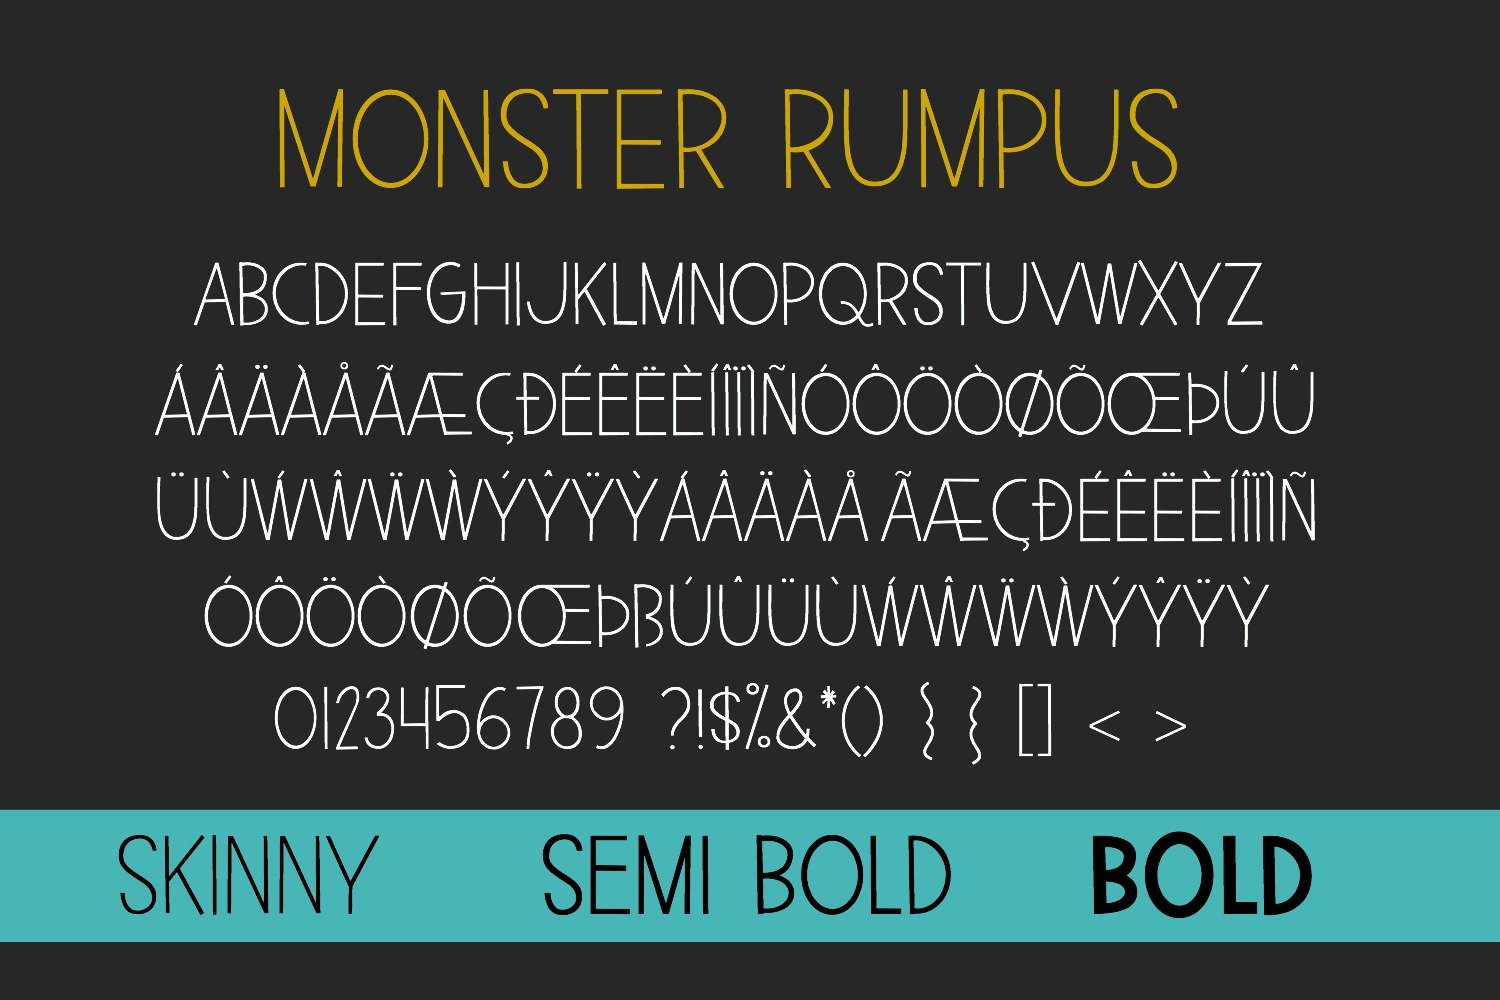 monster rumpus7 577